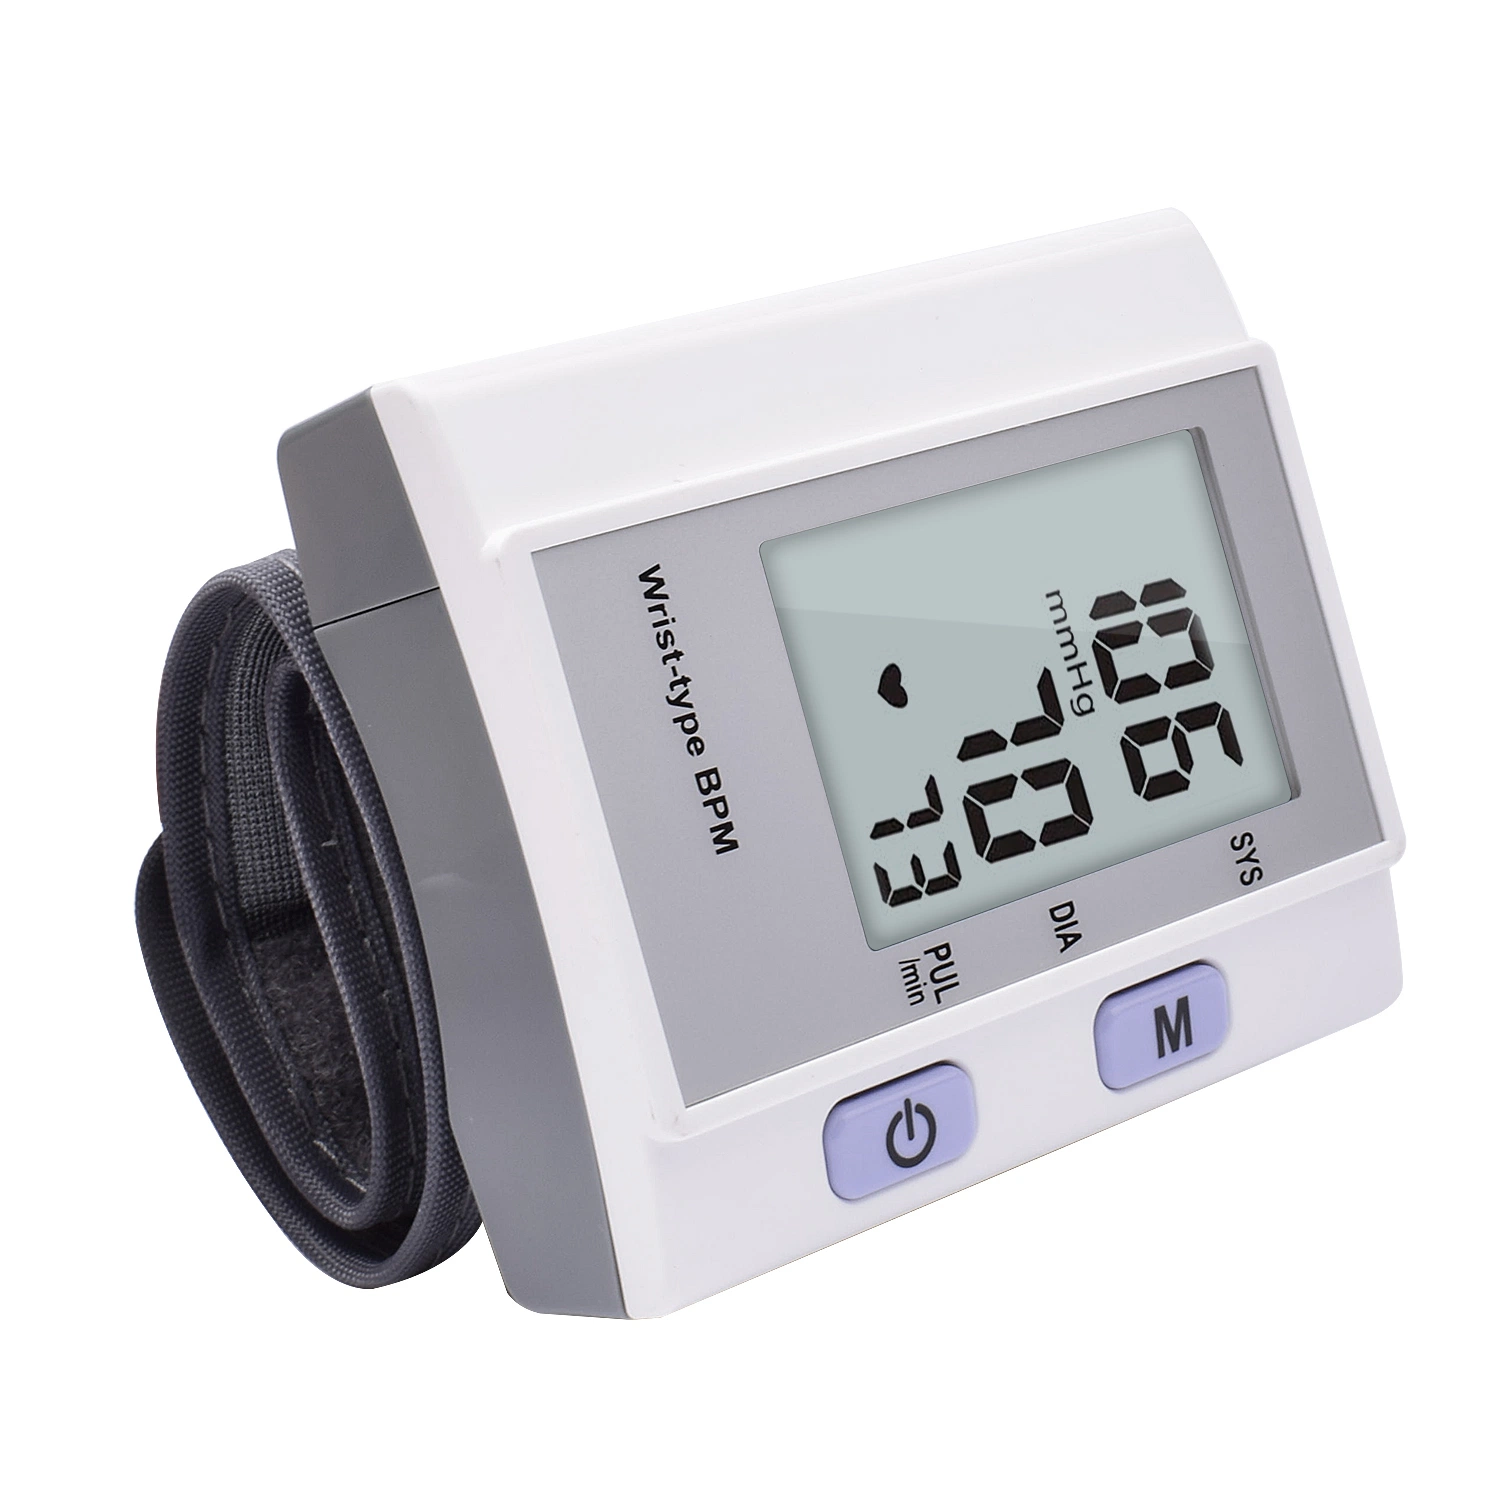 Marcação&amp;FDA precisa eletrônico esfigmomanômetro automático de pulso digital Monitor de Pressão Arterial